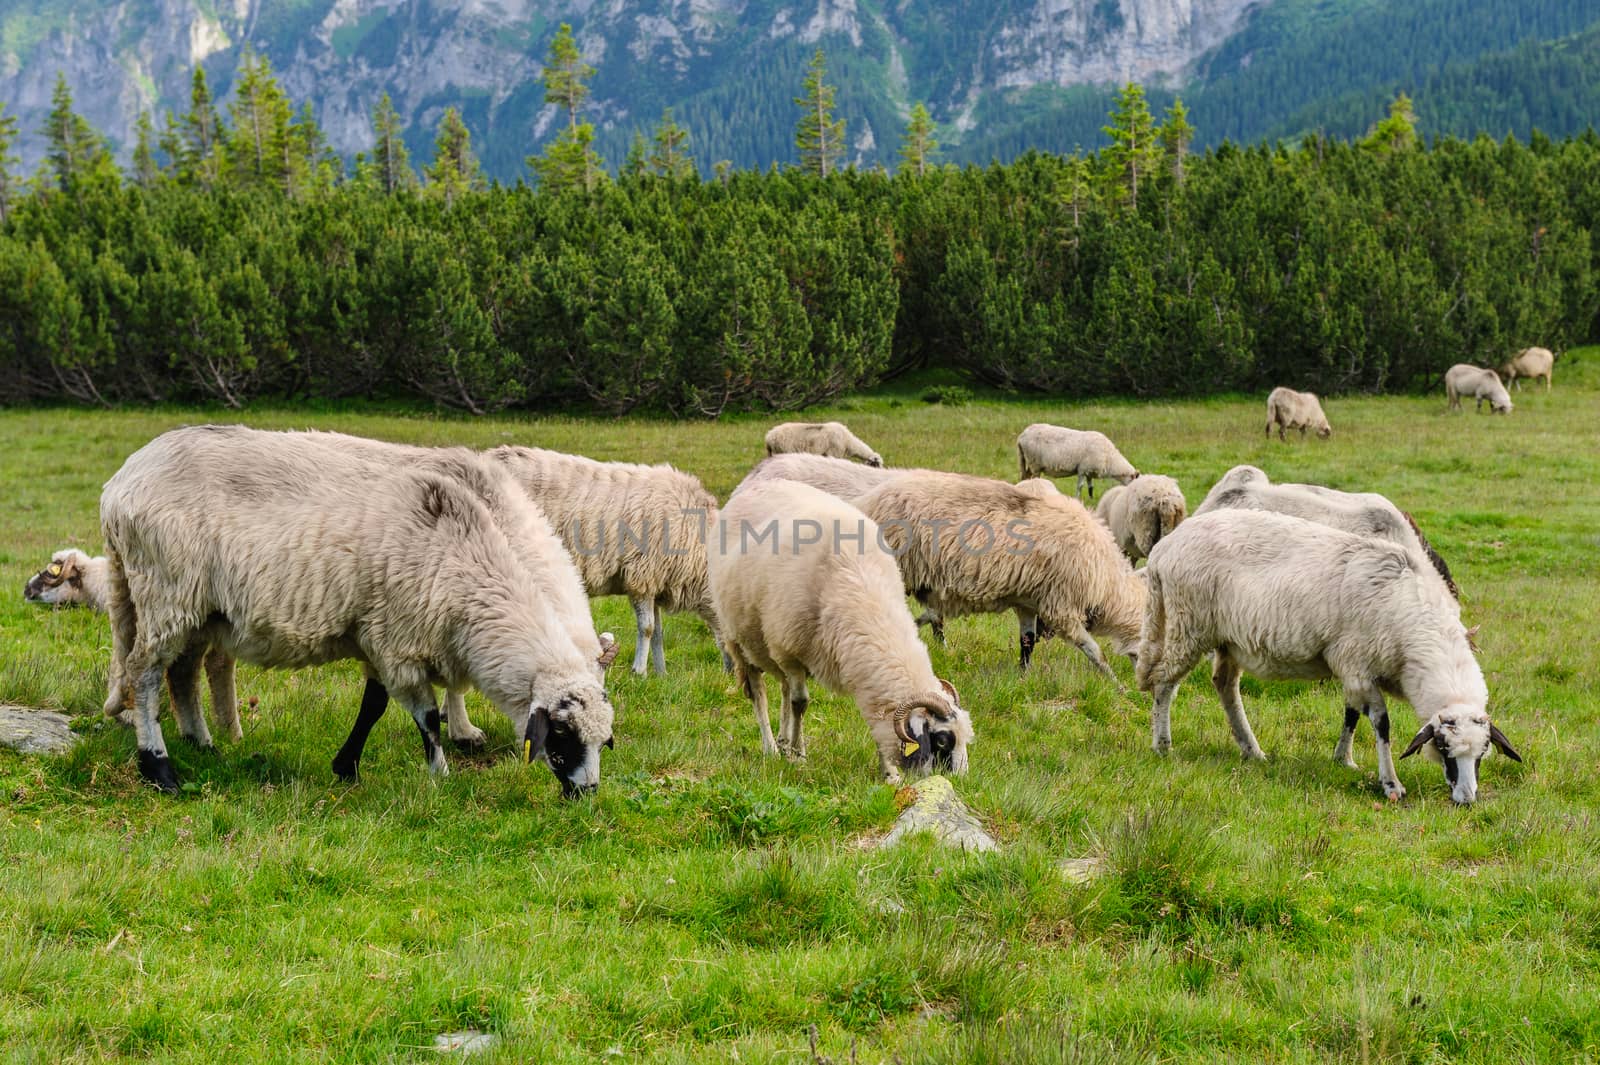 Alpine pastures in Retezat National Park, Carpathians, Romania.  by starush